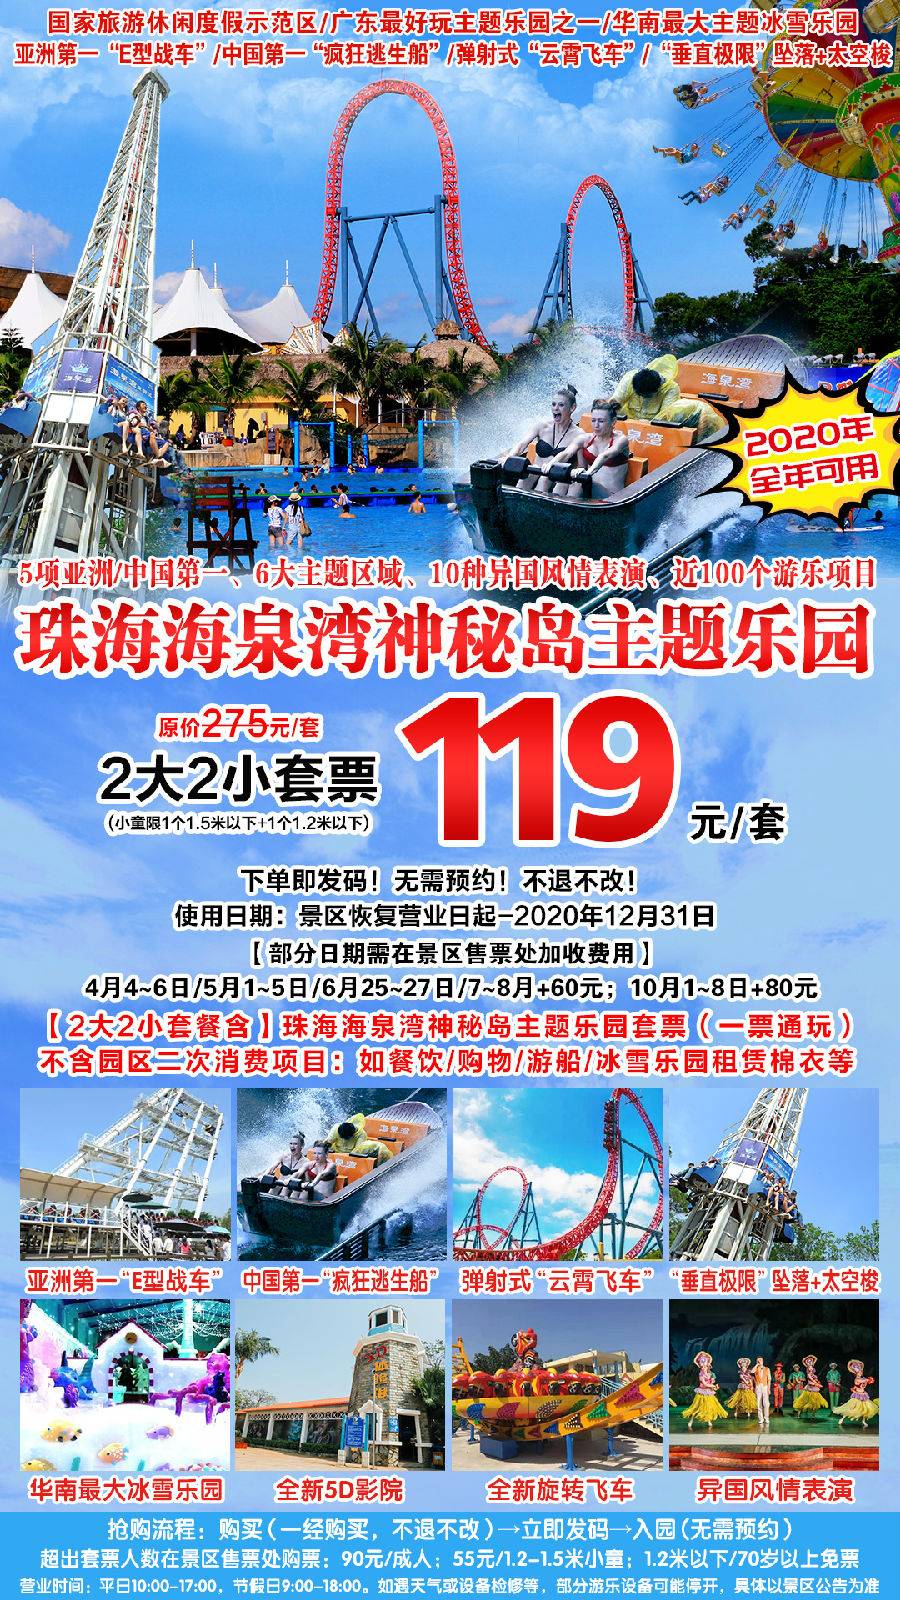 【抢购预售】珠海海泉湾神秘岛主题乐园119元2大2小亲子套票（预售B产品）有效期2020年12月31日